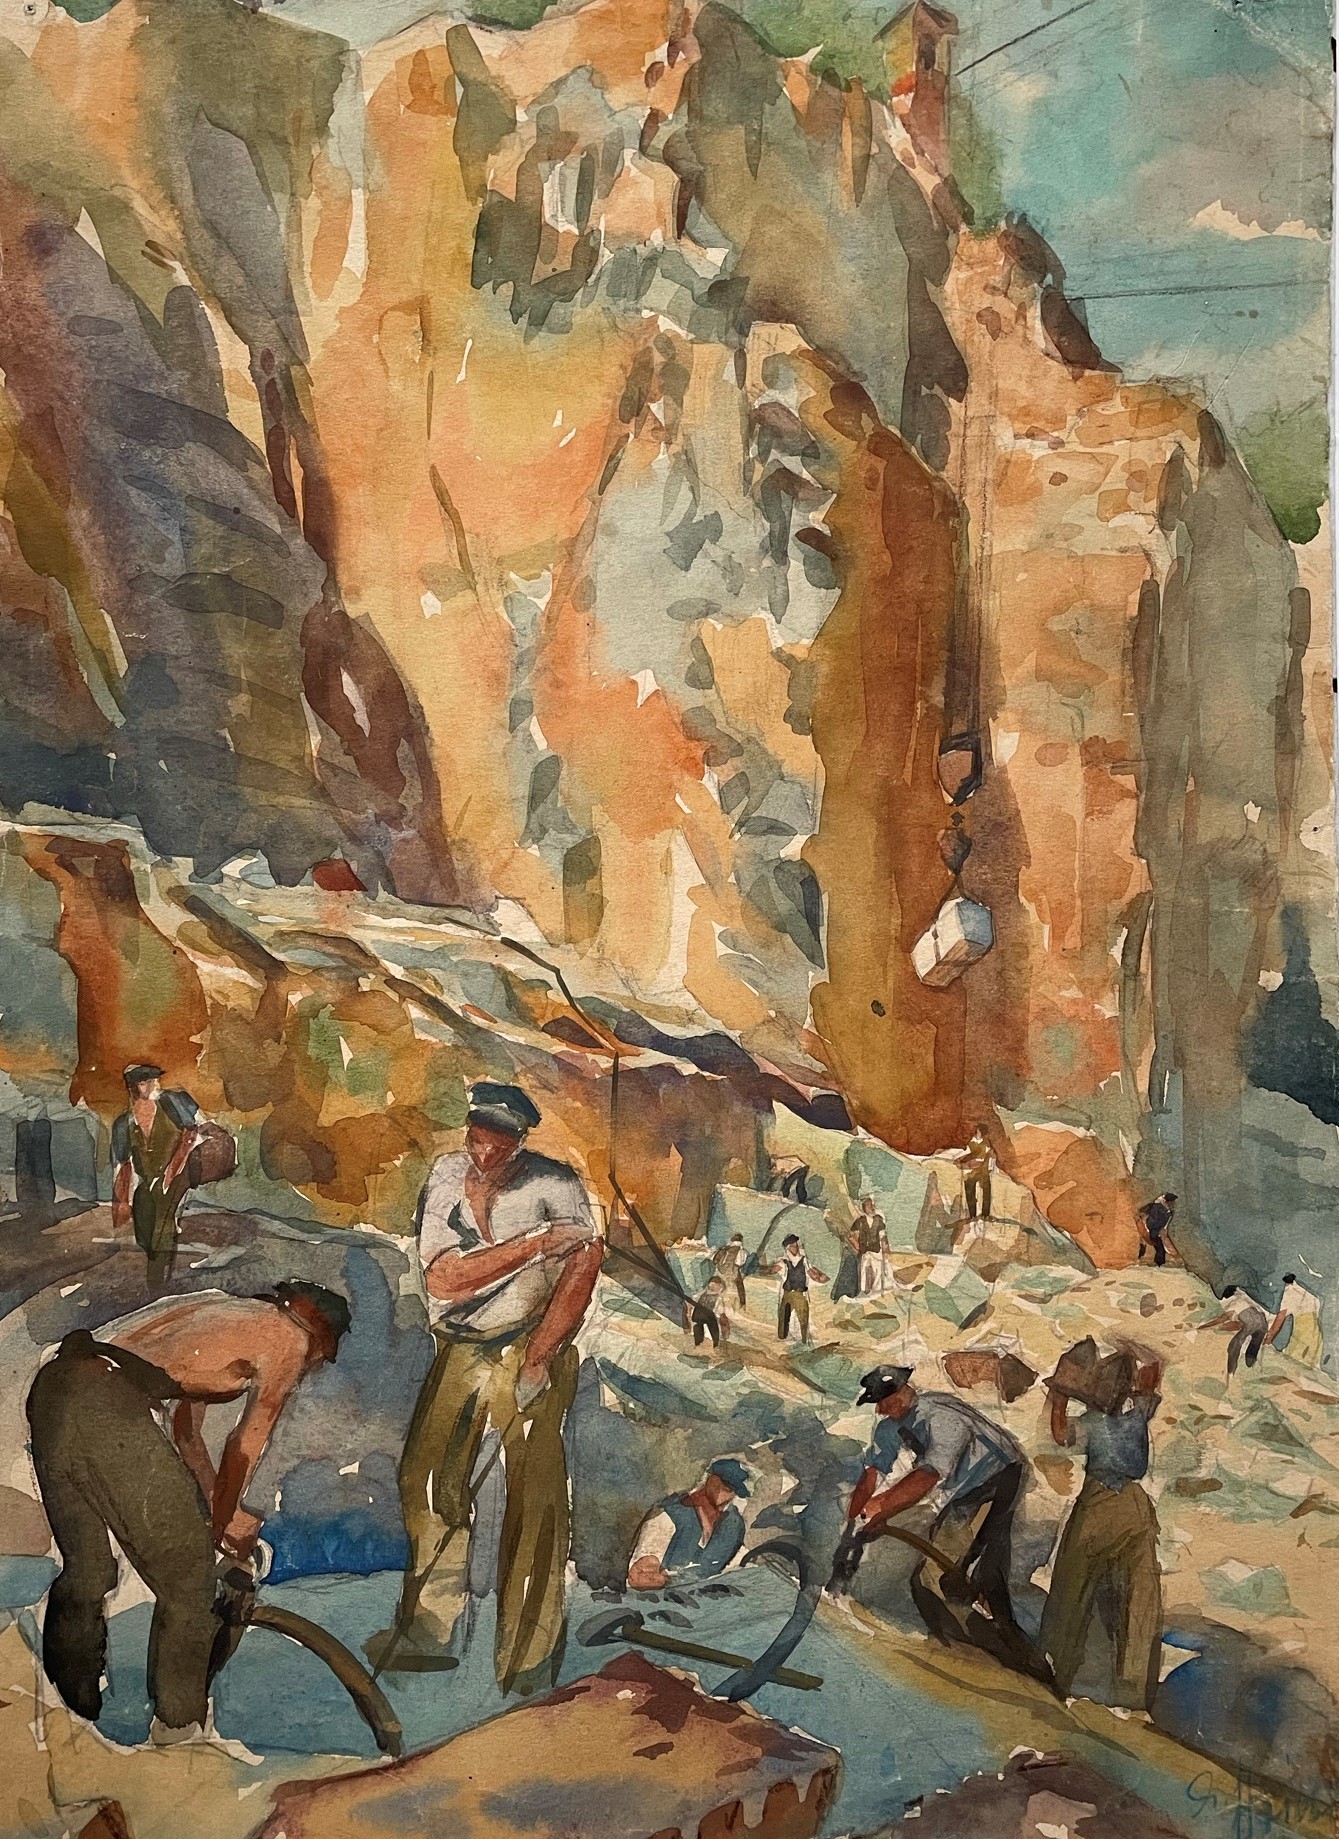 Gemälde von Steinarbeitern